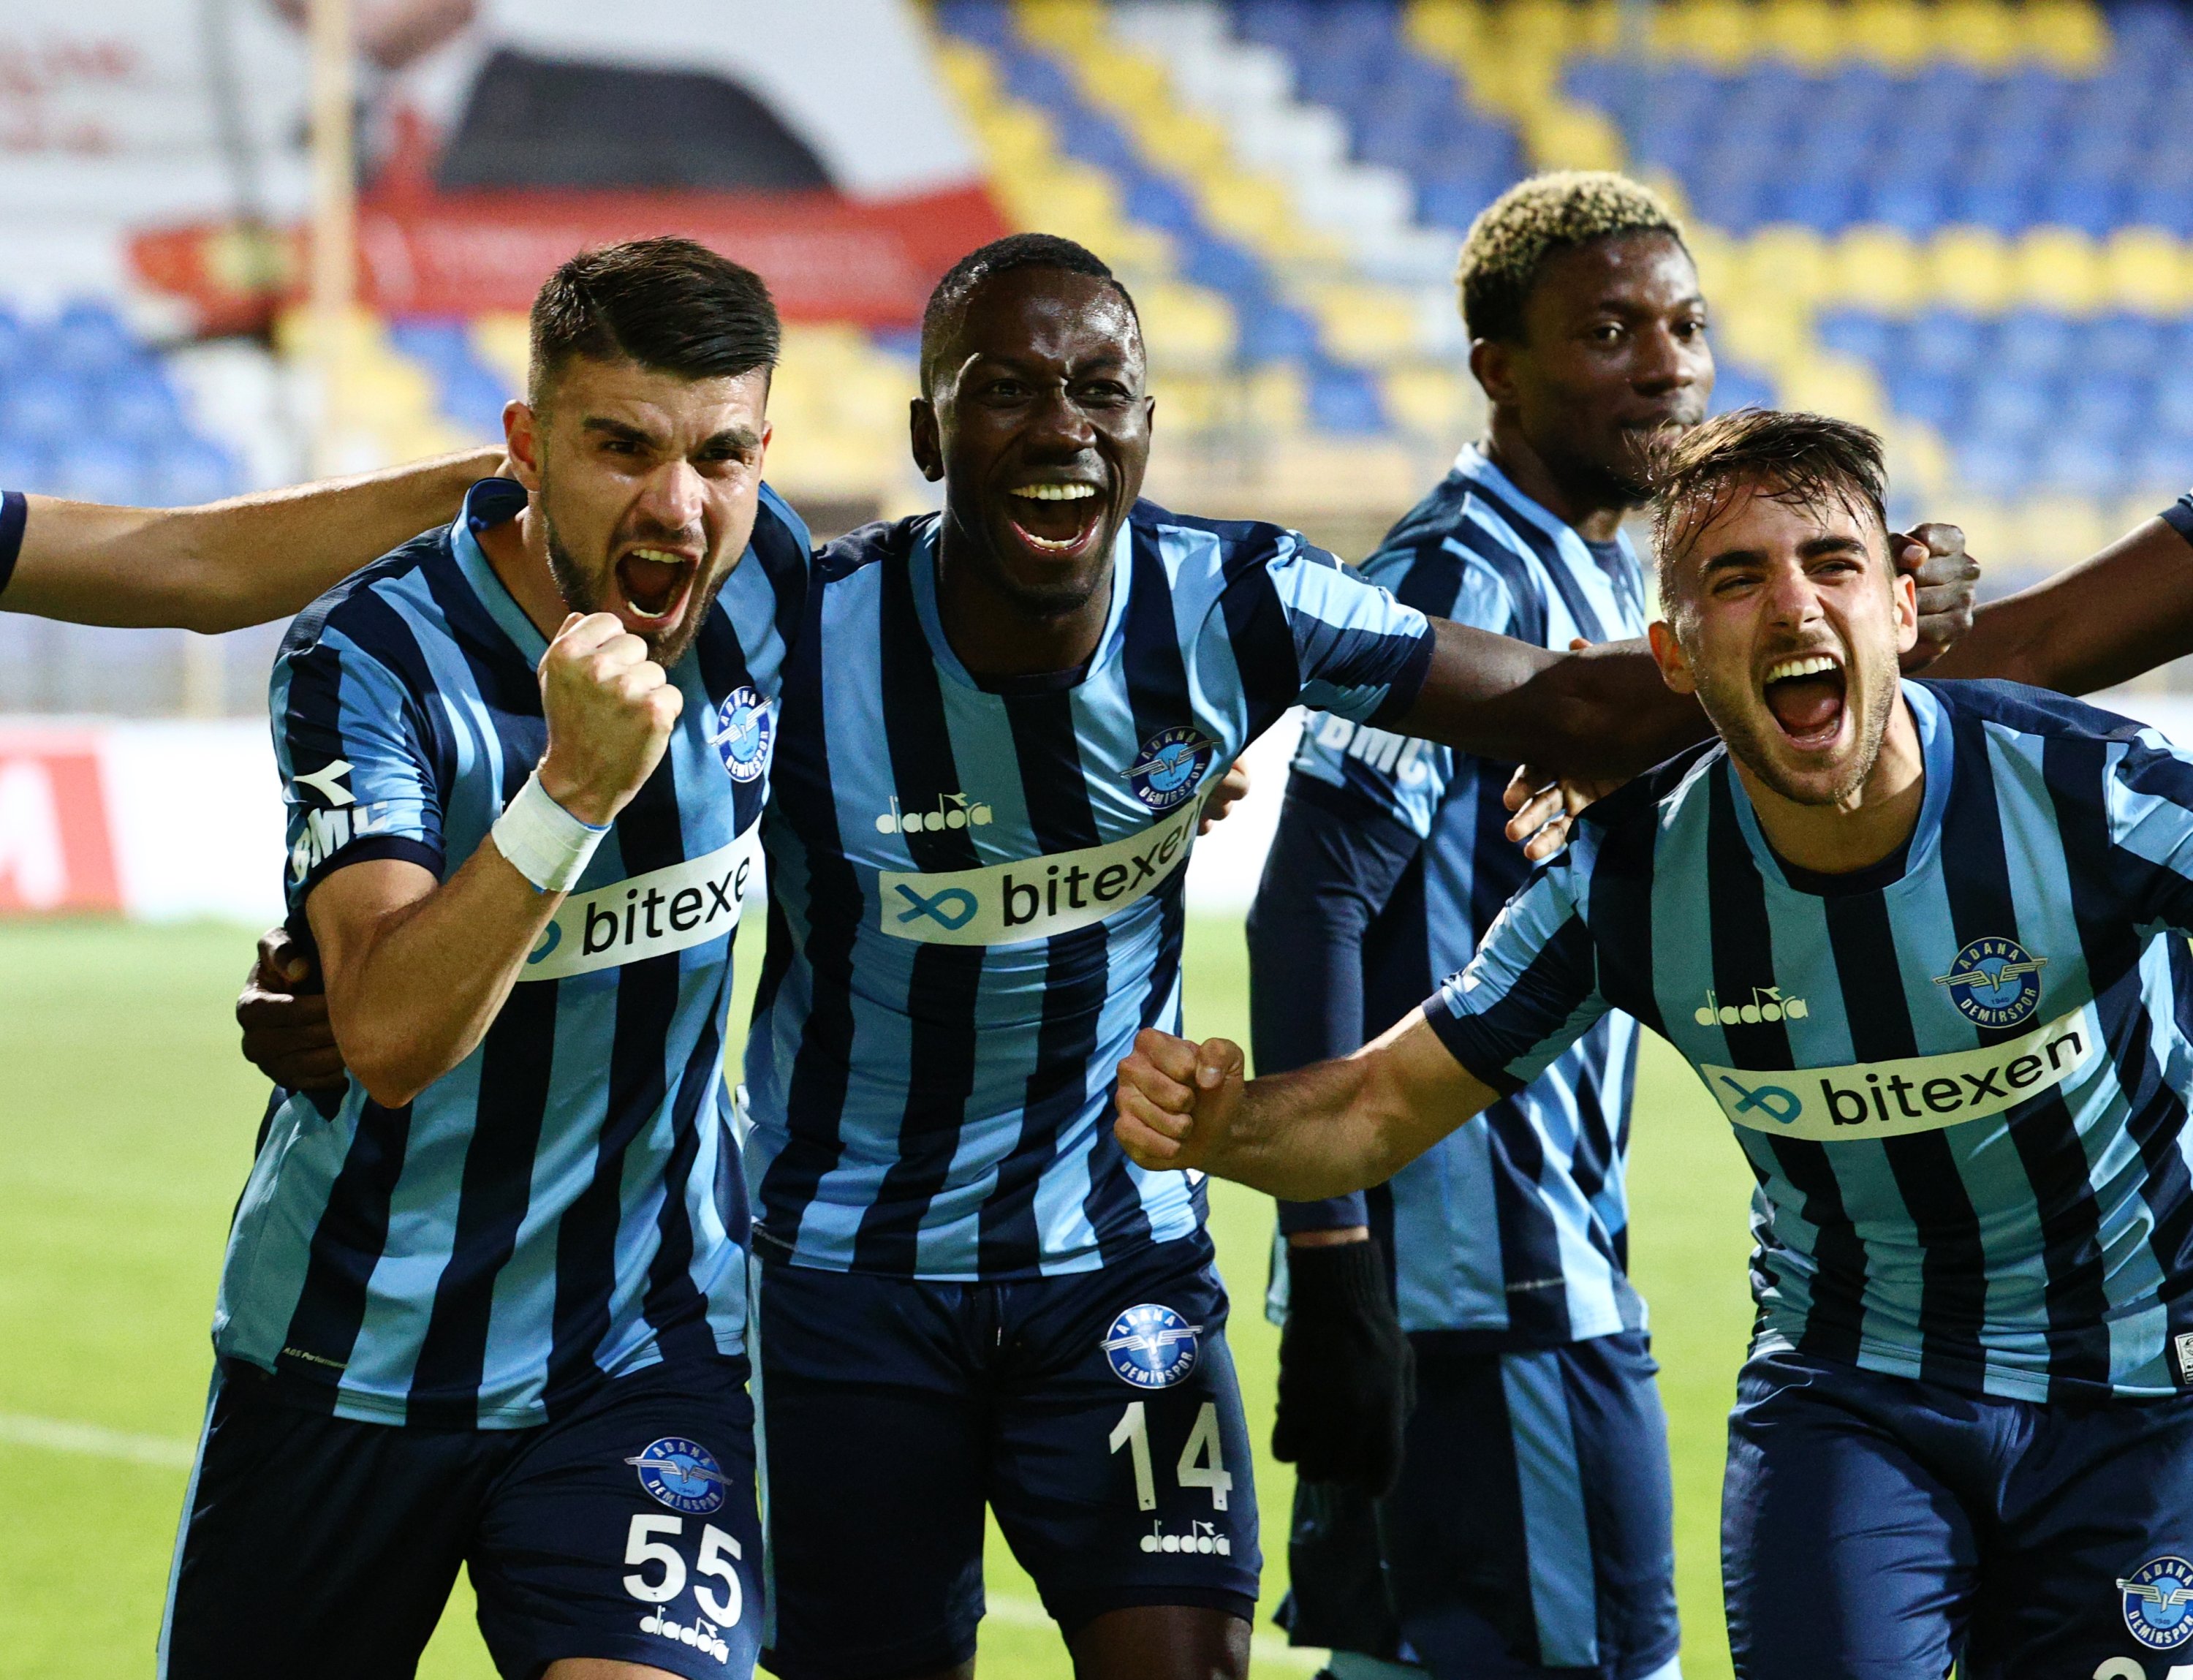 Adana Demirspor Giresunspor Earn Turkish Super Lig Promotion Daily Sabah